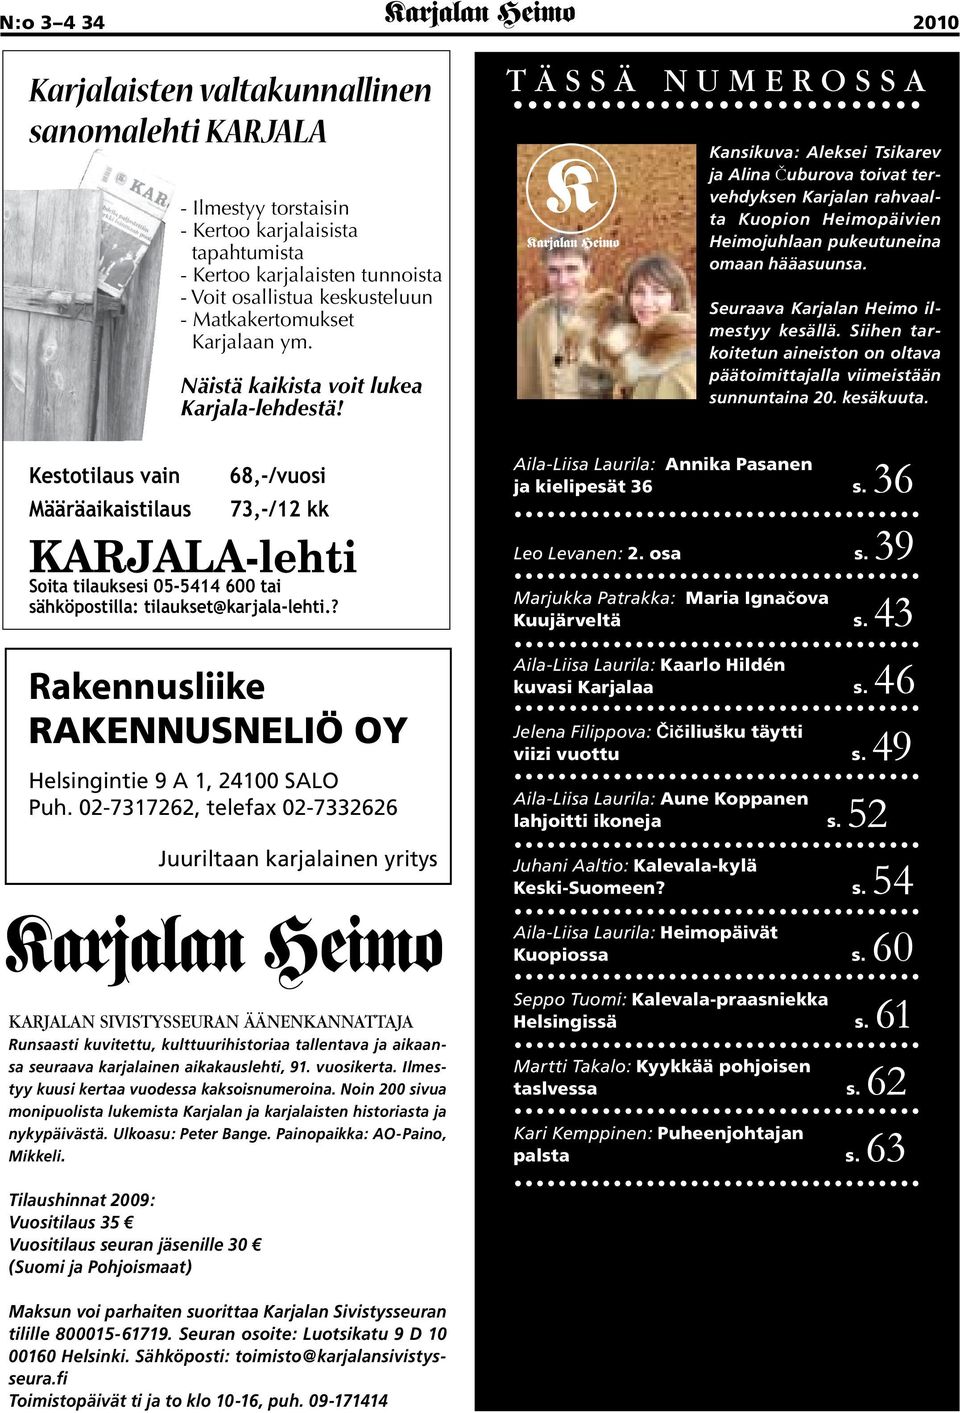 68,-/vuosi Määräaikaistilaus 73,-/12 kk KARJALA-lehti Soita tilauksesi 05-5414 600 tai sähköpostilla: tilaukset@karjala-lehti.? Rakennusliike RAKENNUSNELIÖ OY Helsingintie 9 A 1, 24100 SALO Puh.